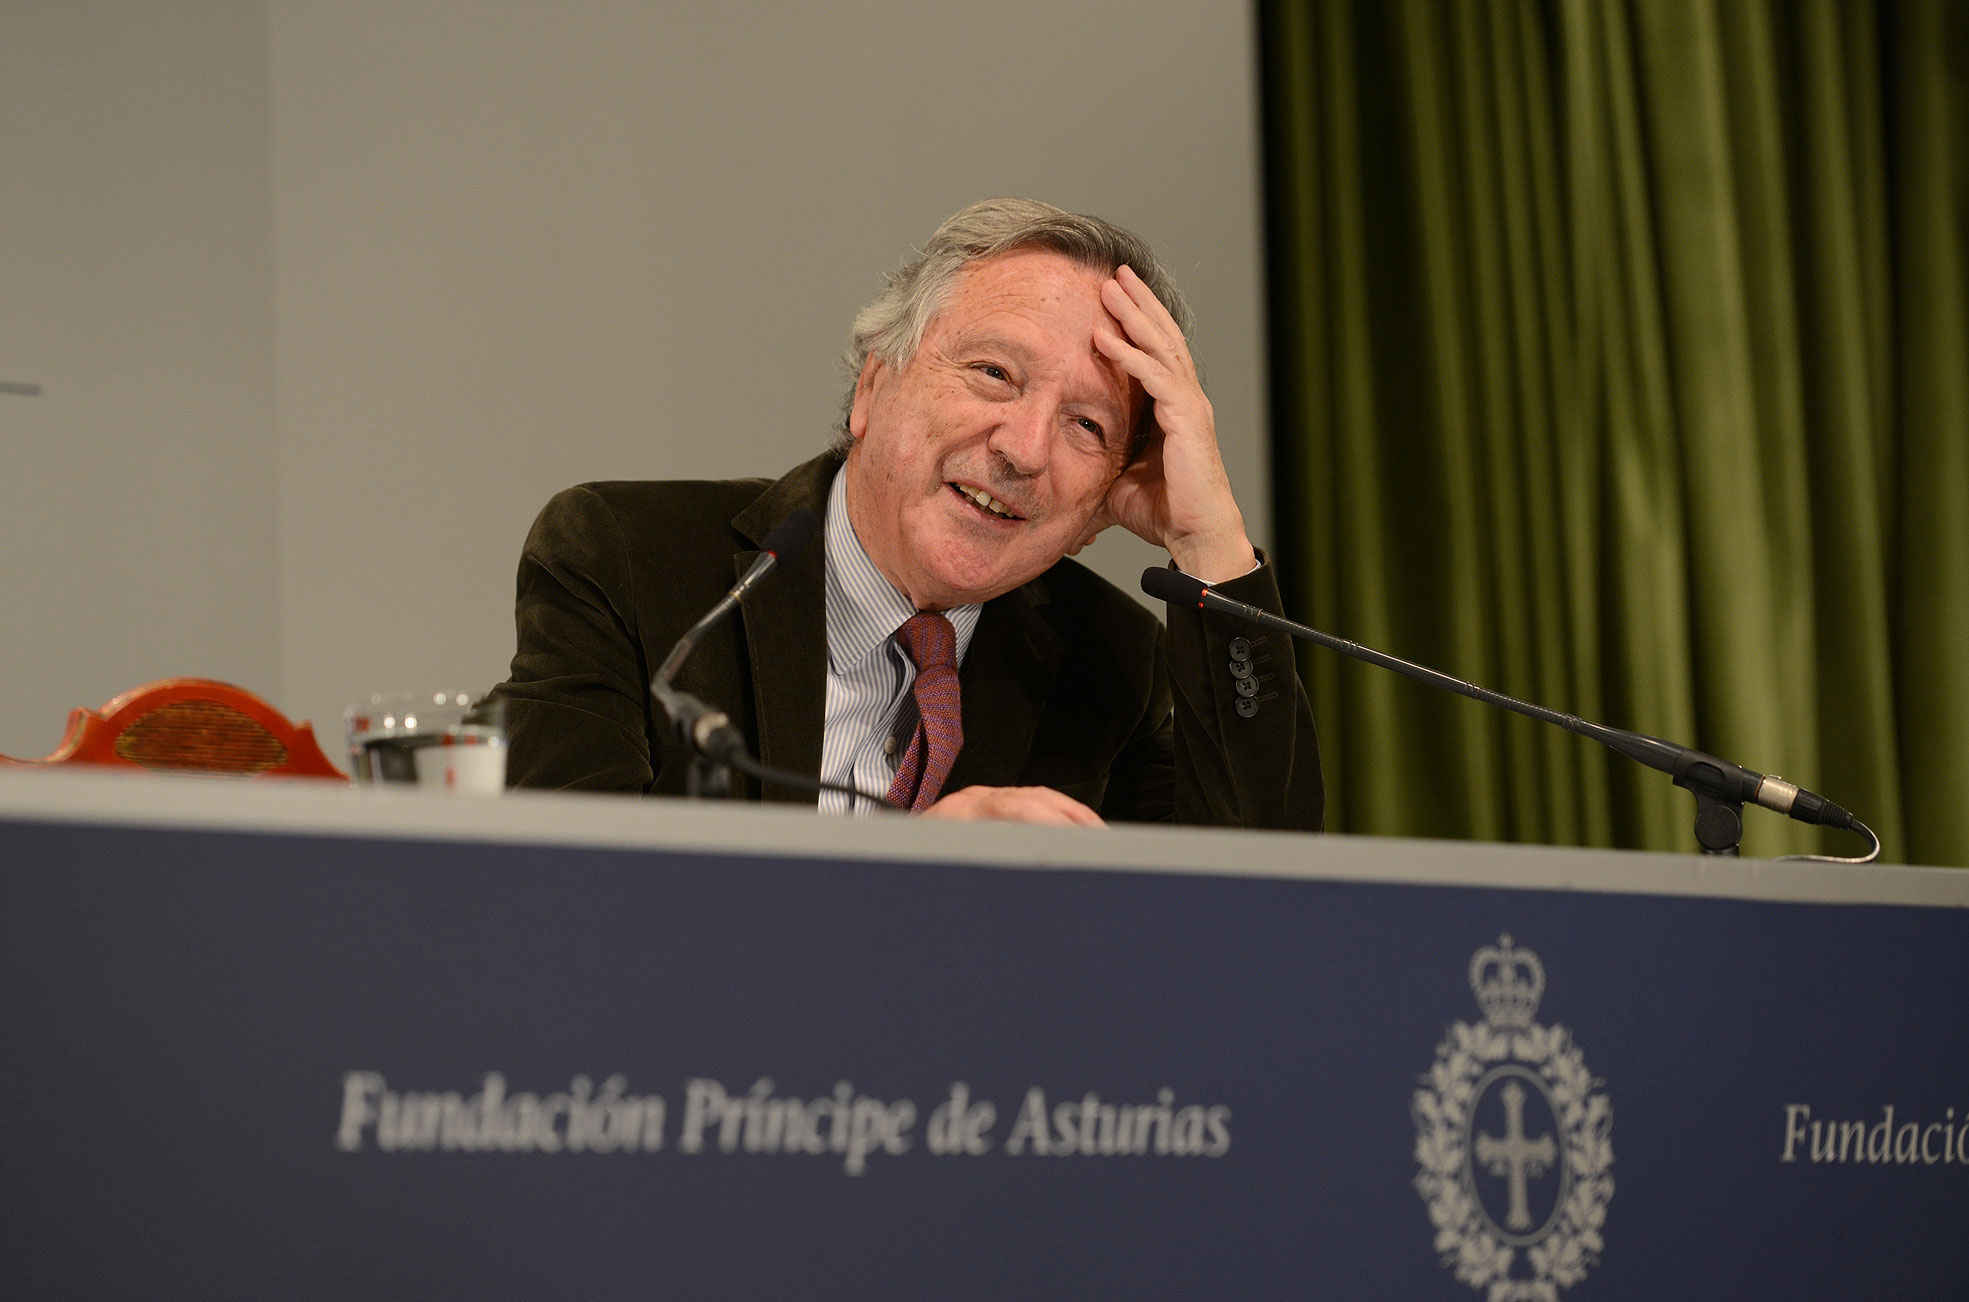 Rafael Moneo press conference